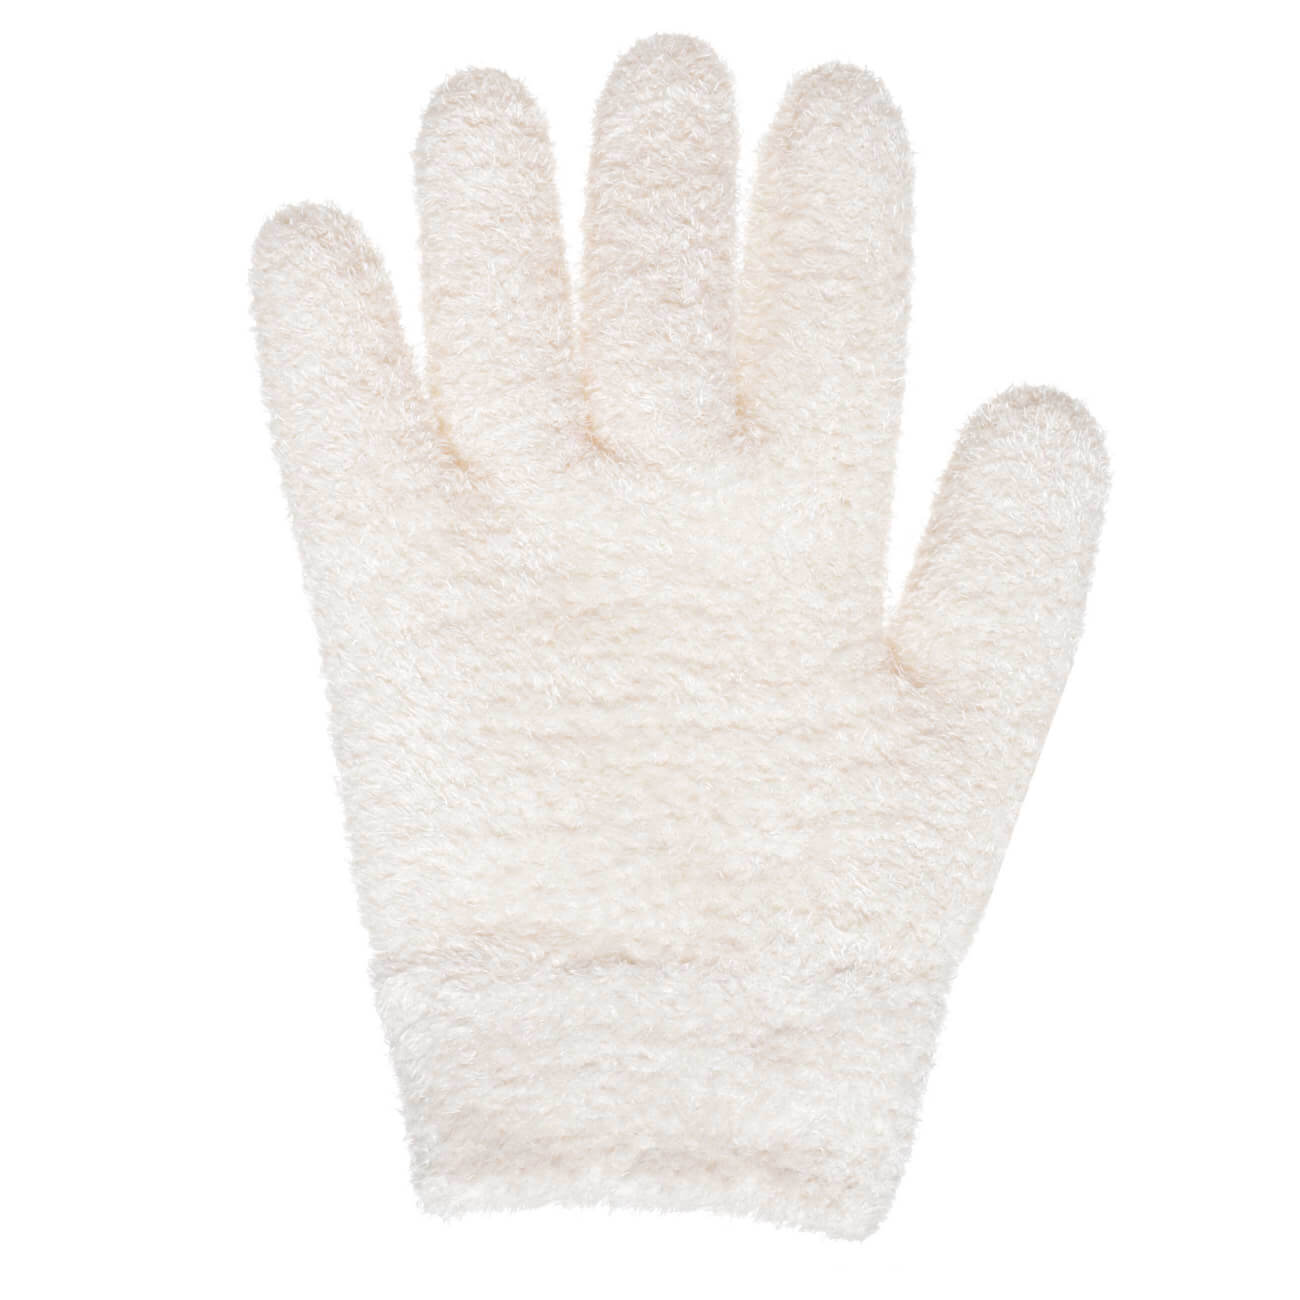 СПА-перчатки гелевые, 20 см, многоразовые, полиэстер, молочные, Spa